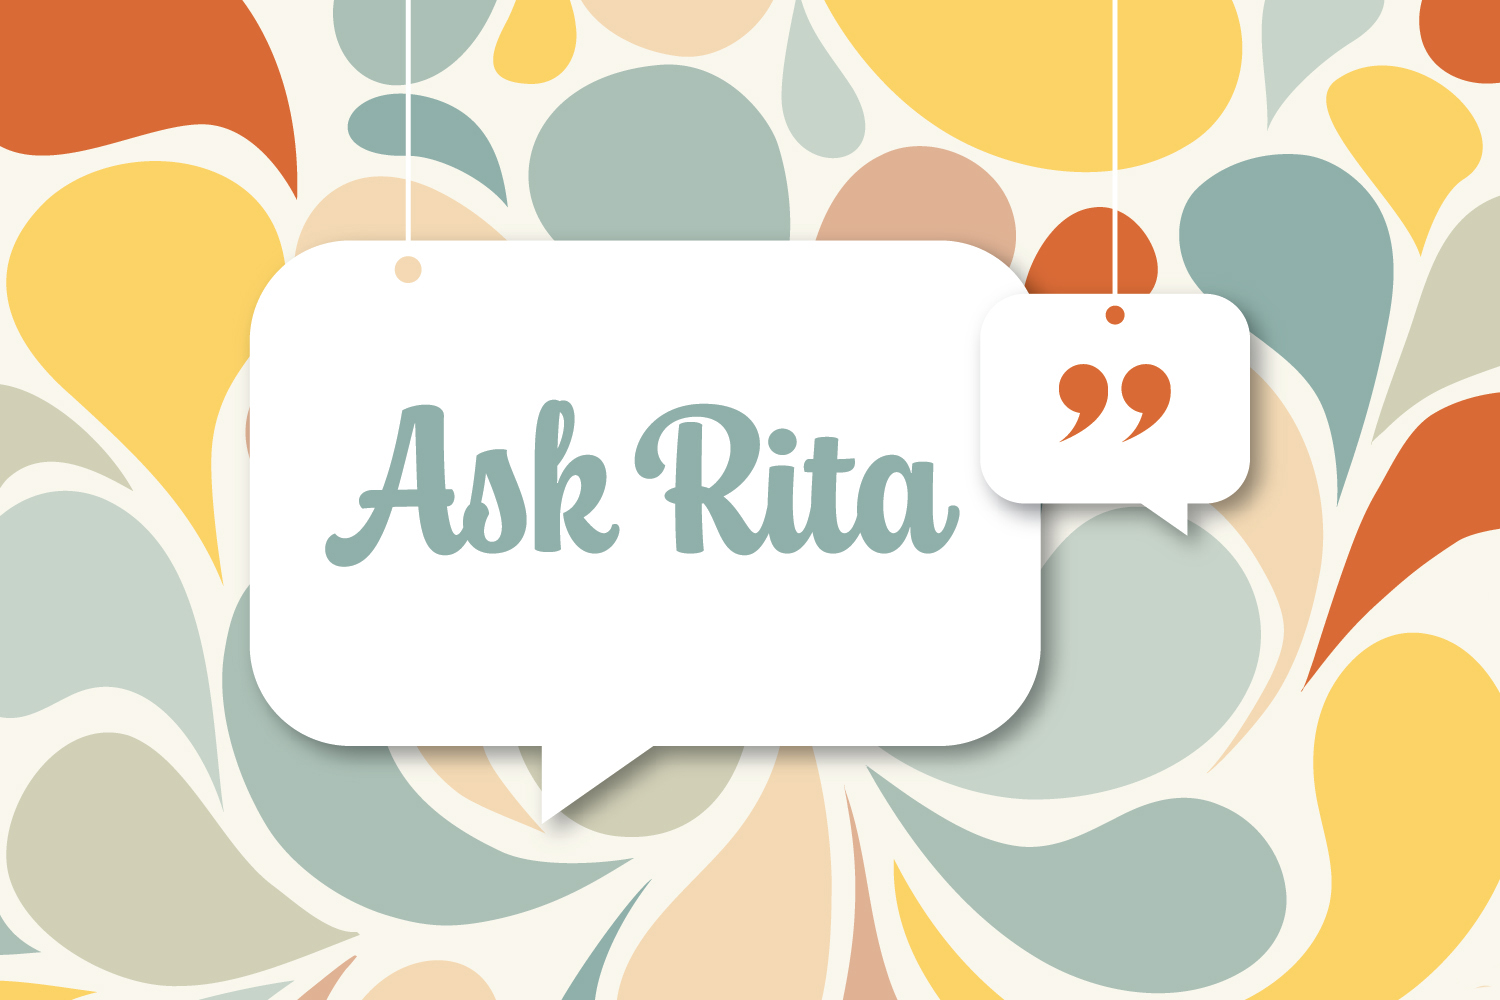 Ask Rita: I Have a Bad Boss! Help!